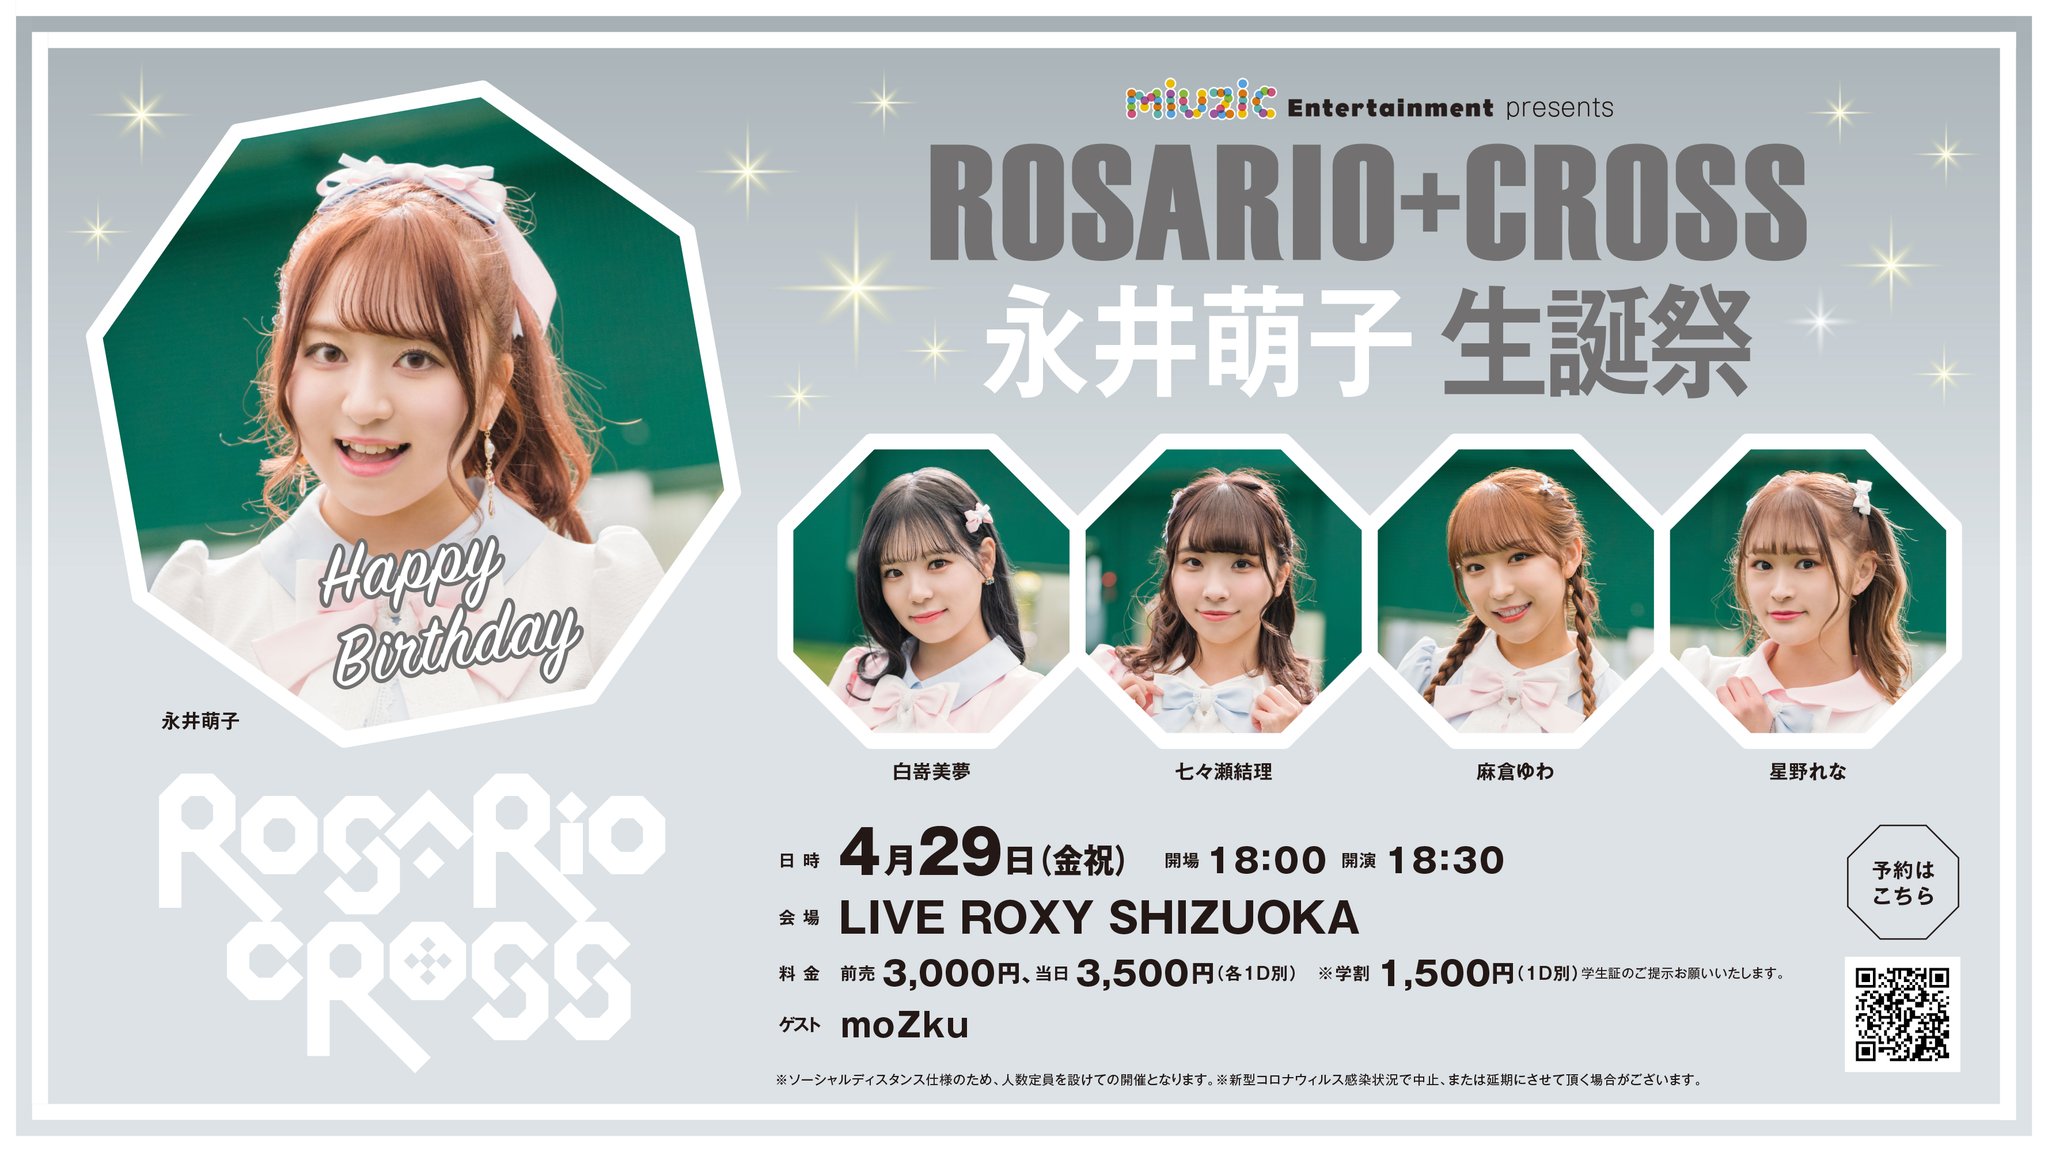 4/29(金祝)「ROSARIO+CROSS 永井萌子 生誕祭」